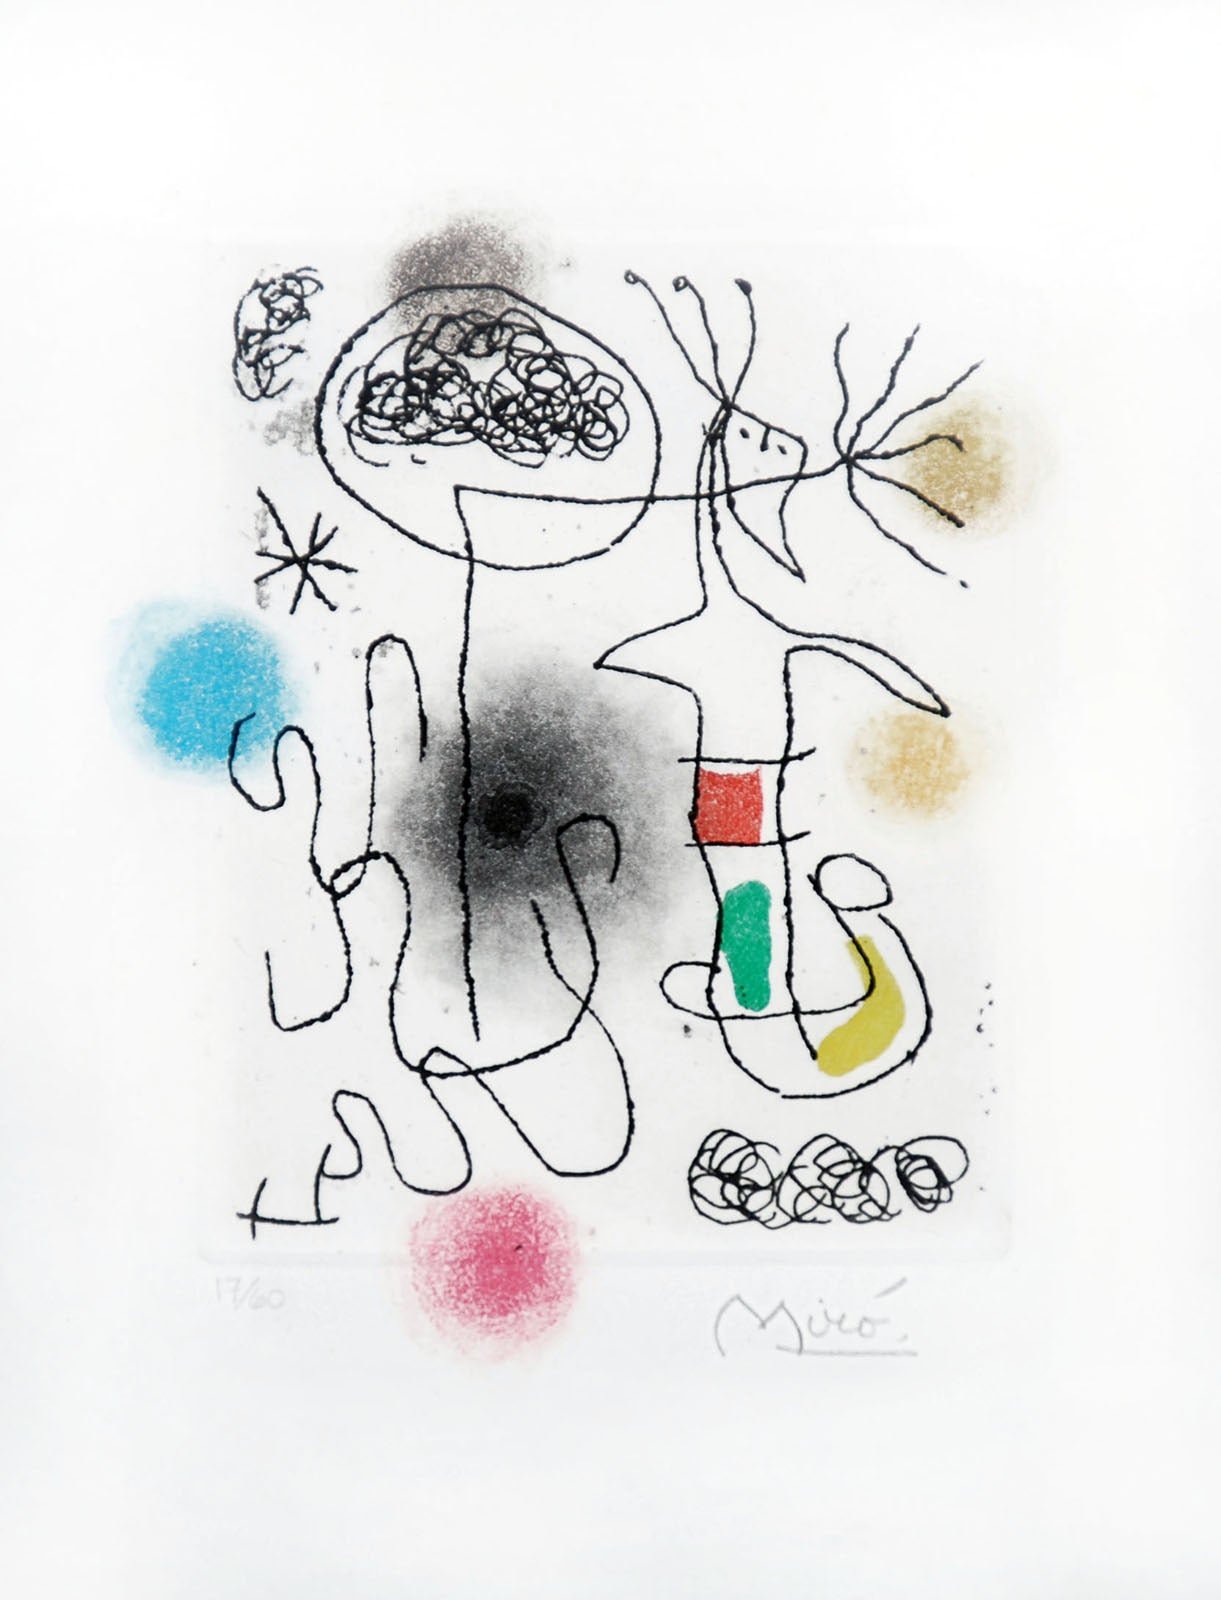 Midi le trèfle blanc, 1968 - Print by Joan Miró